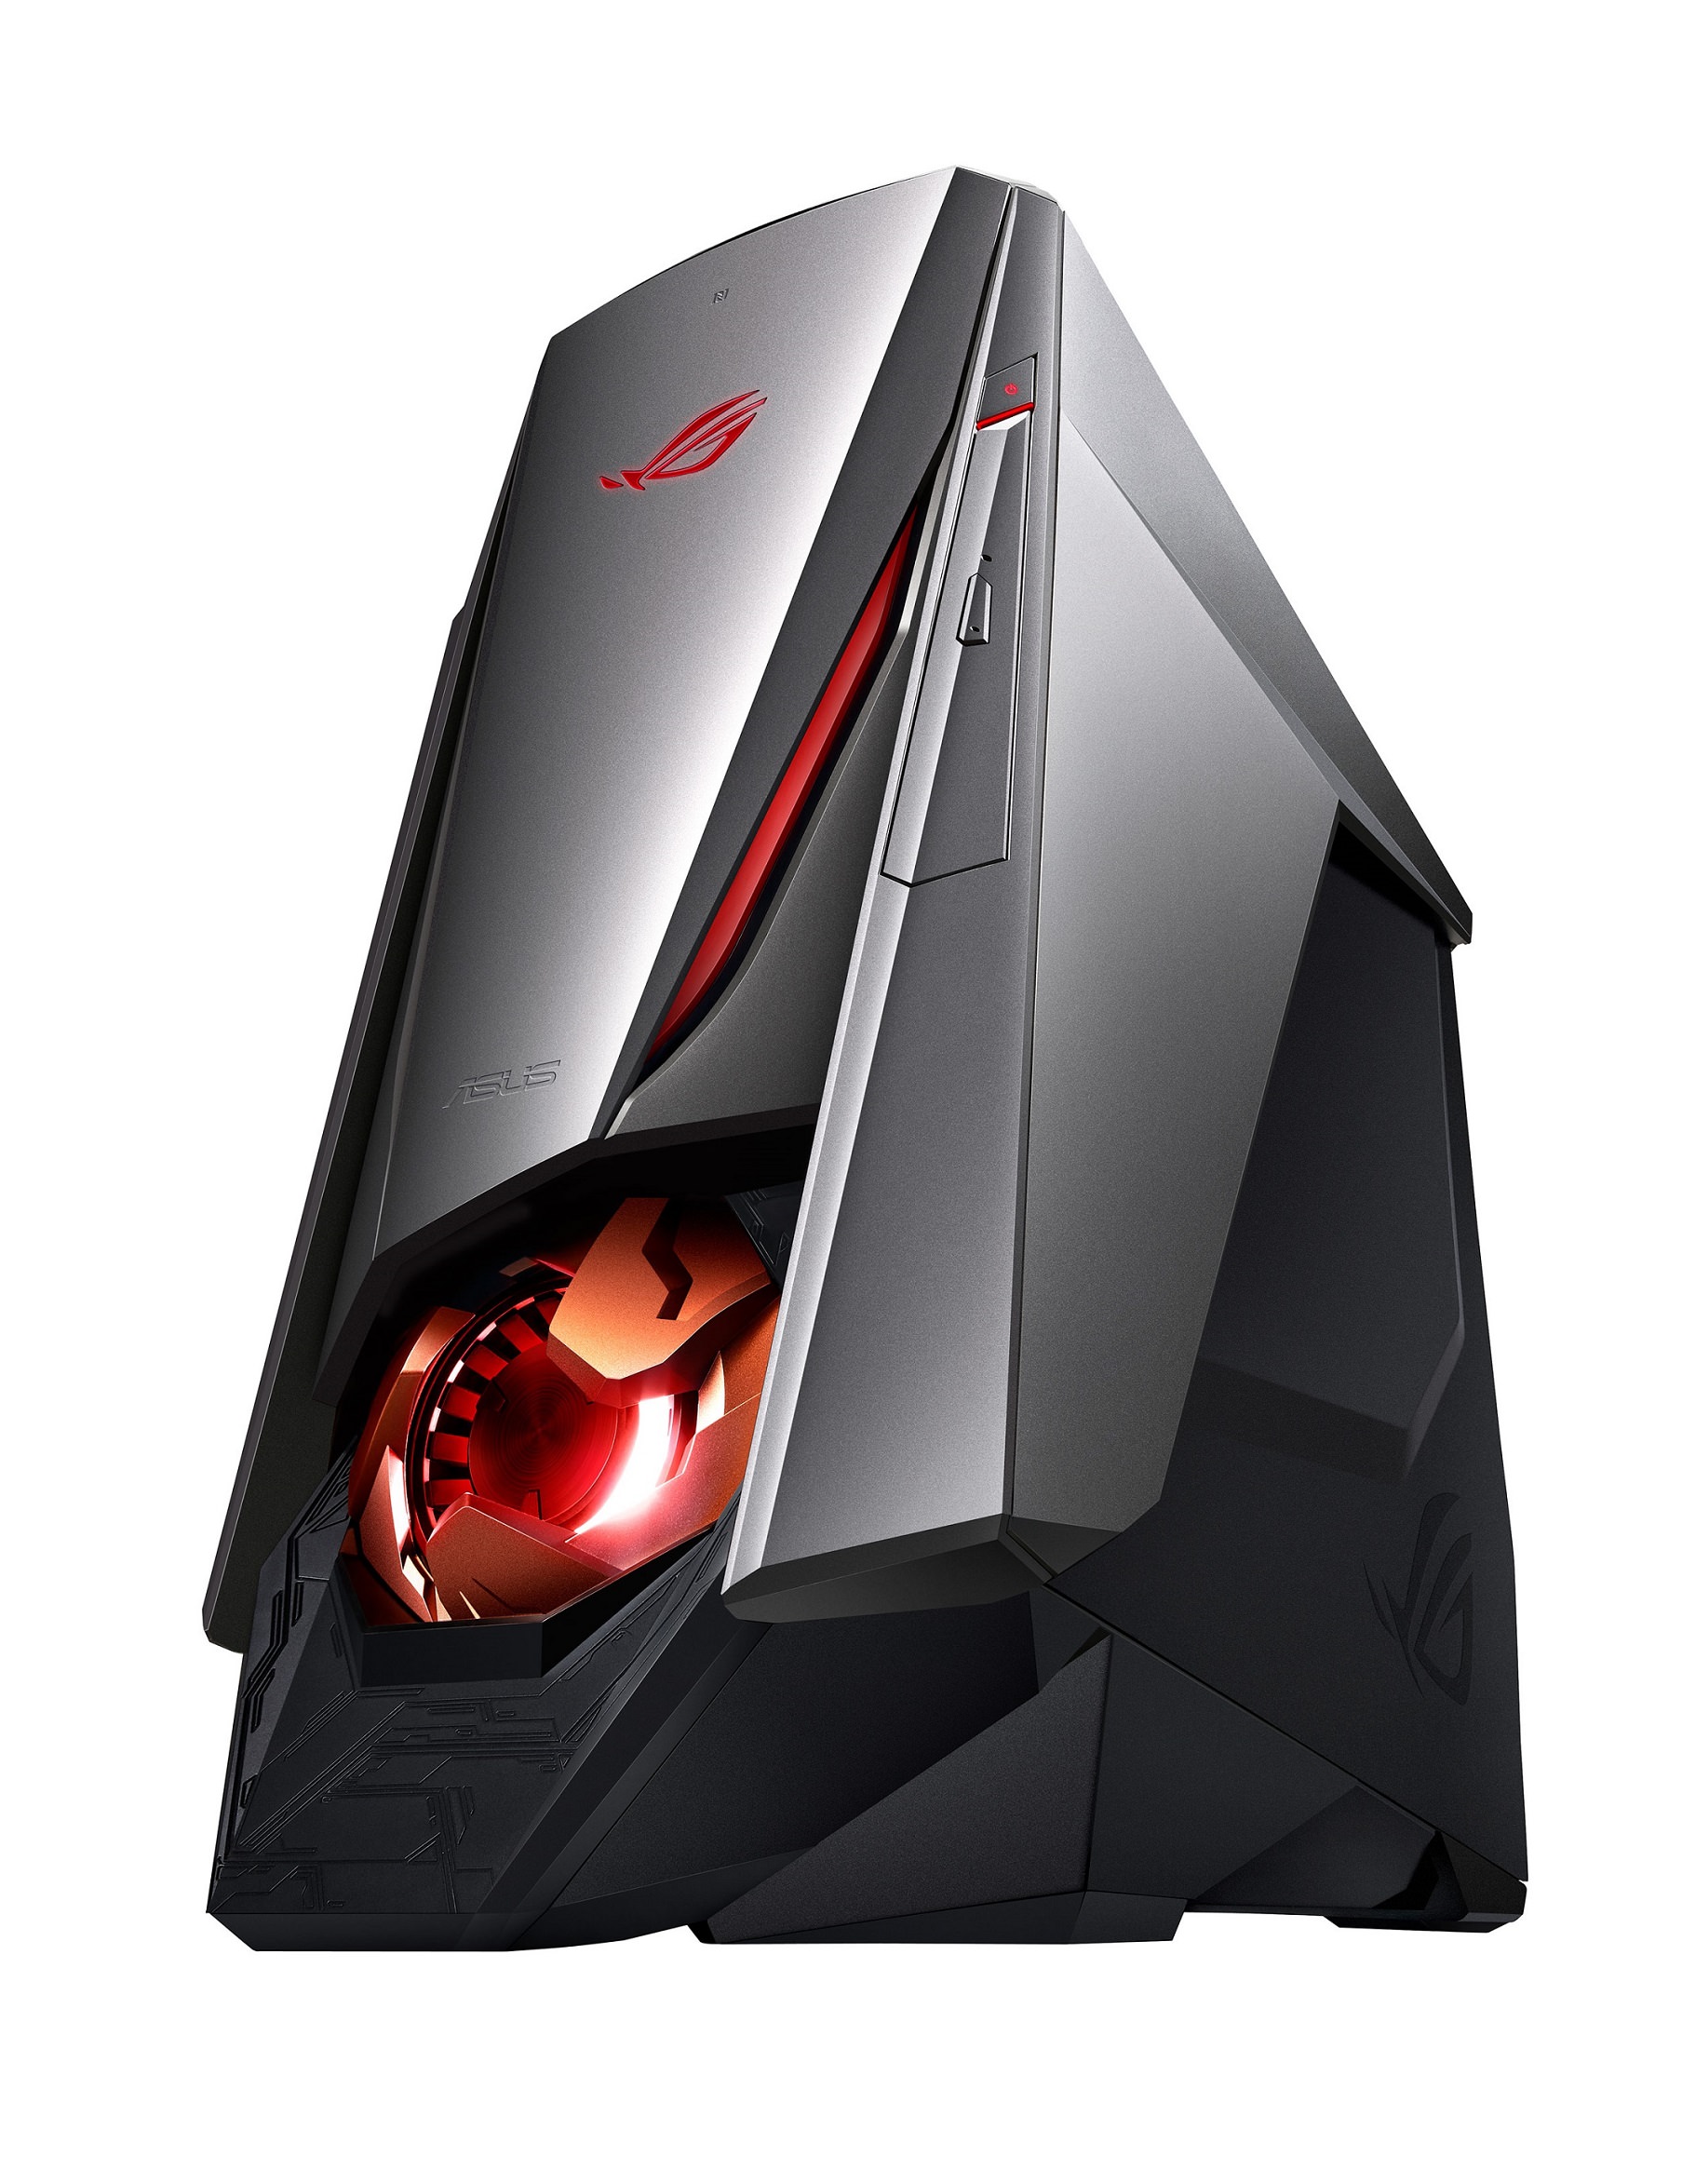 華碩應用展搶先推出搭載全新NVIDIA® GeForce® GTX1070、1080顯示卡之電競桌機ROG GT51